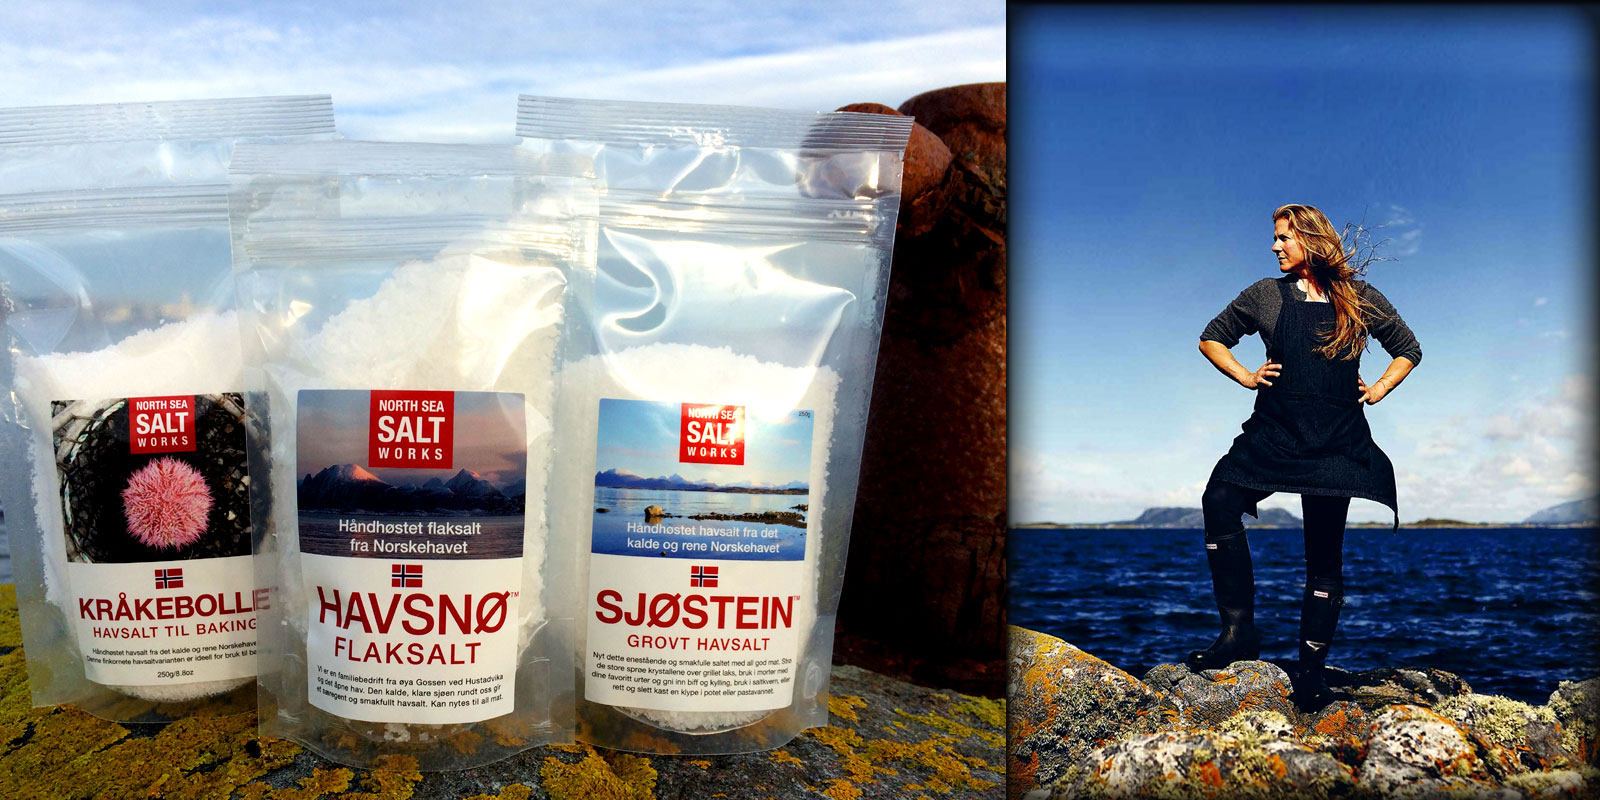 HAVSNO Salt fra North Sea Saltverksmidhjunni HAVSNO North Sea Salt Works: Upplifdhu bragdhidh af sjonum i gegnum hreinleika vorunnar og framleidhslu hennar, hreint Noregur.